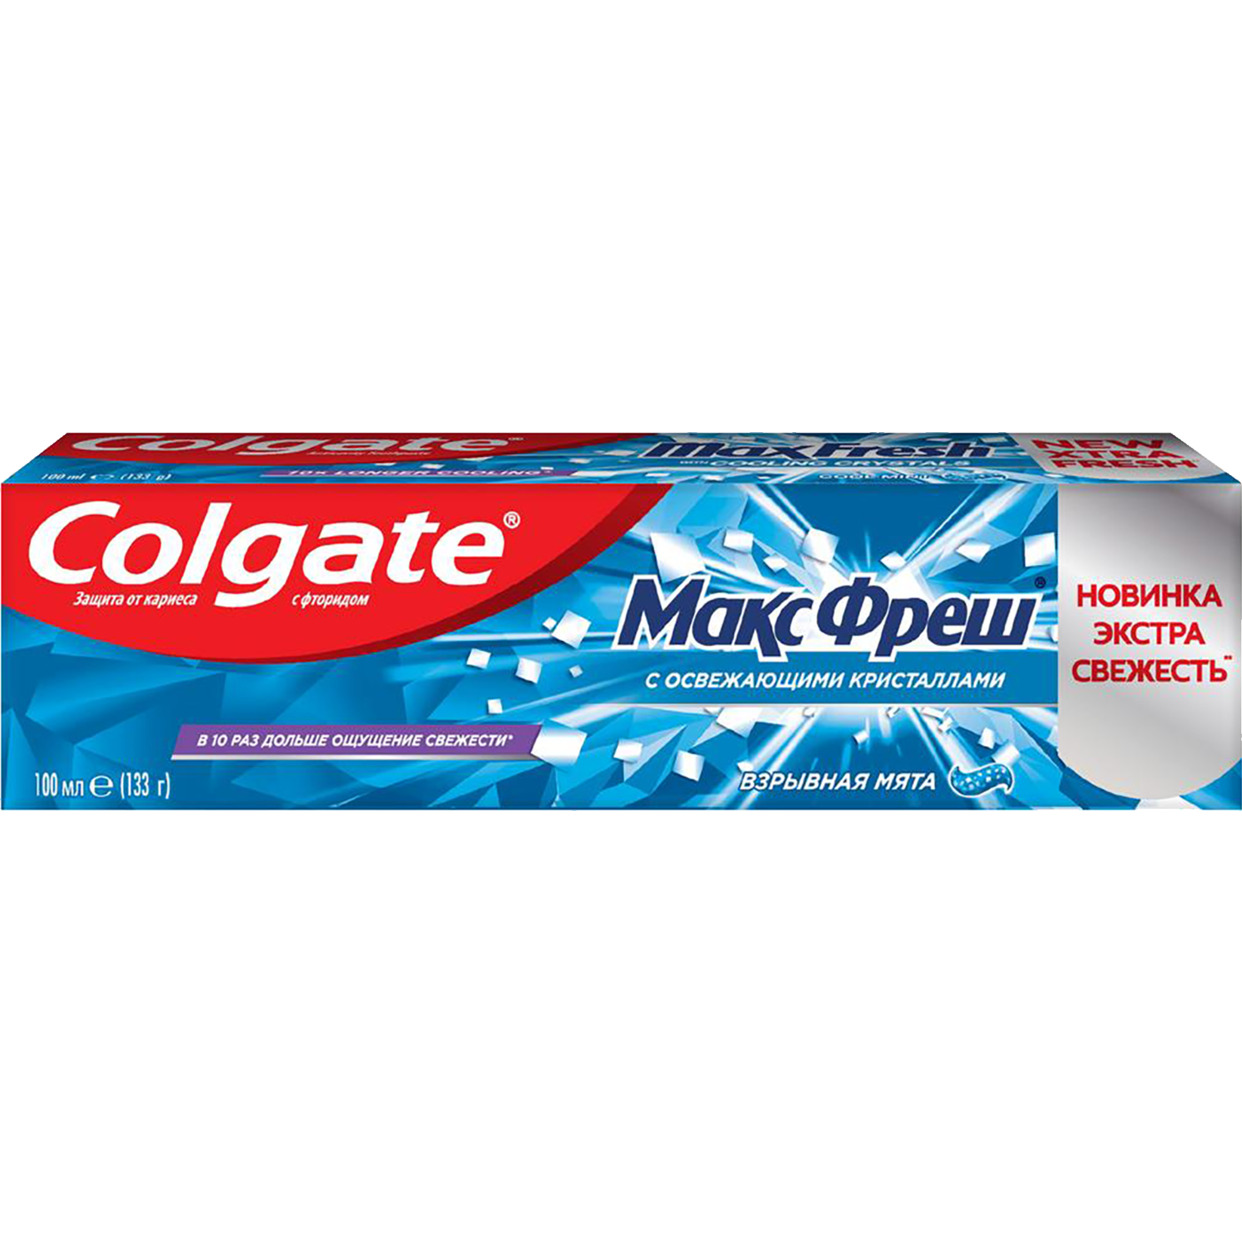 Зубная паста Colgate МаксФреш взрывная мята 100 мл по акции в Пятерочке